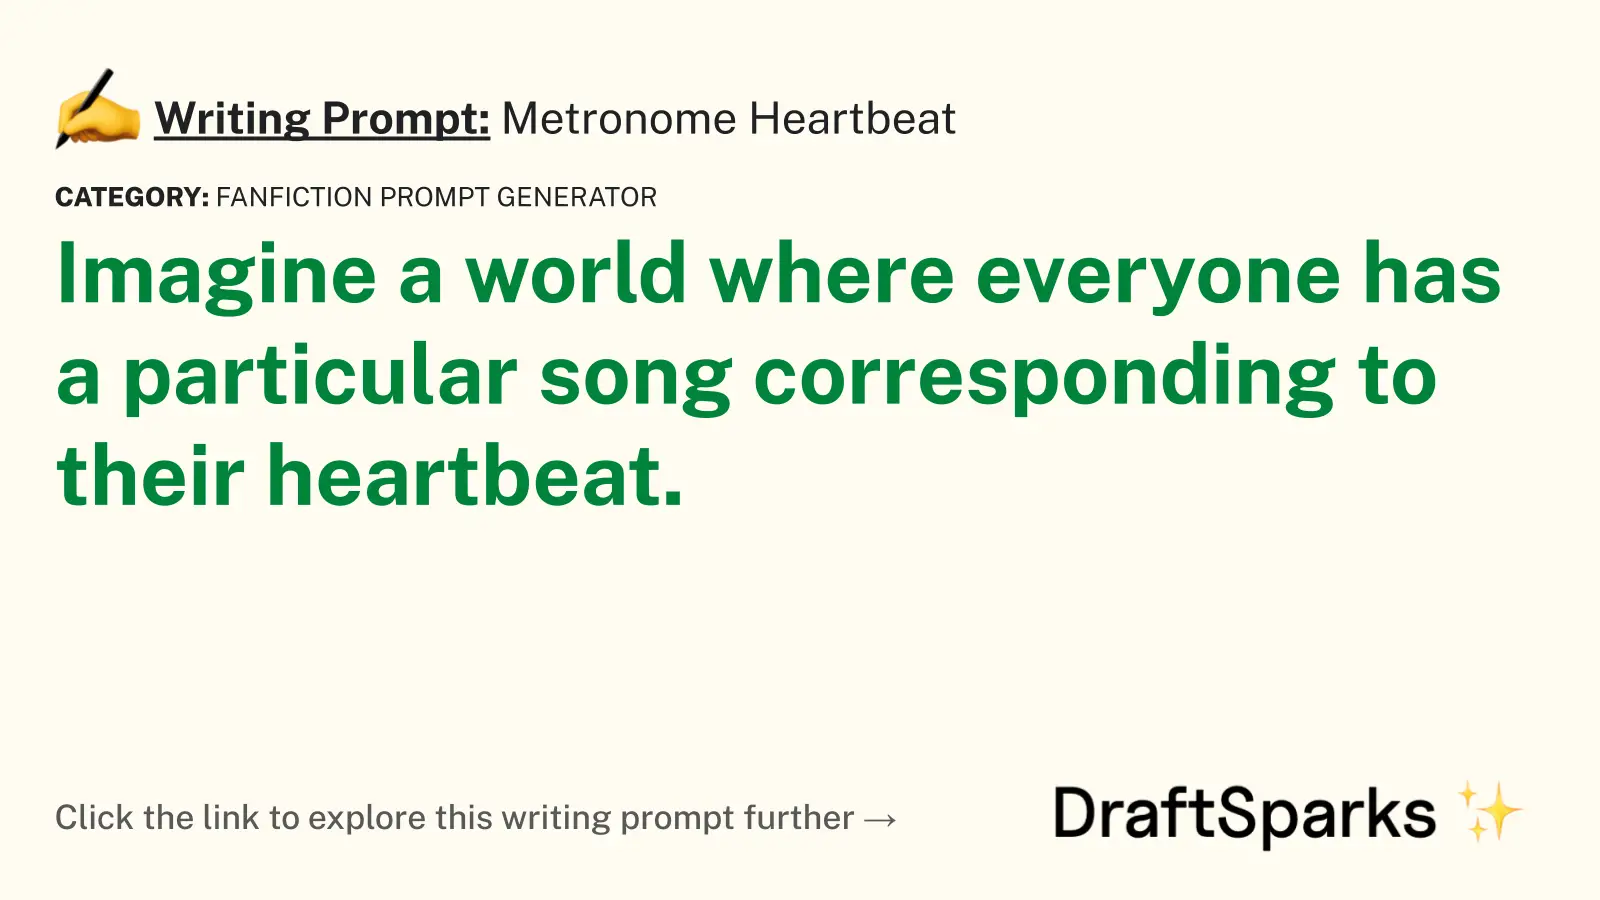 Metronome Heartbeat